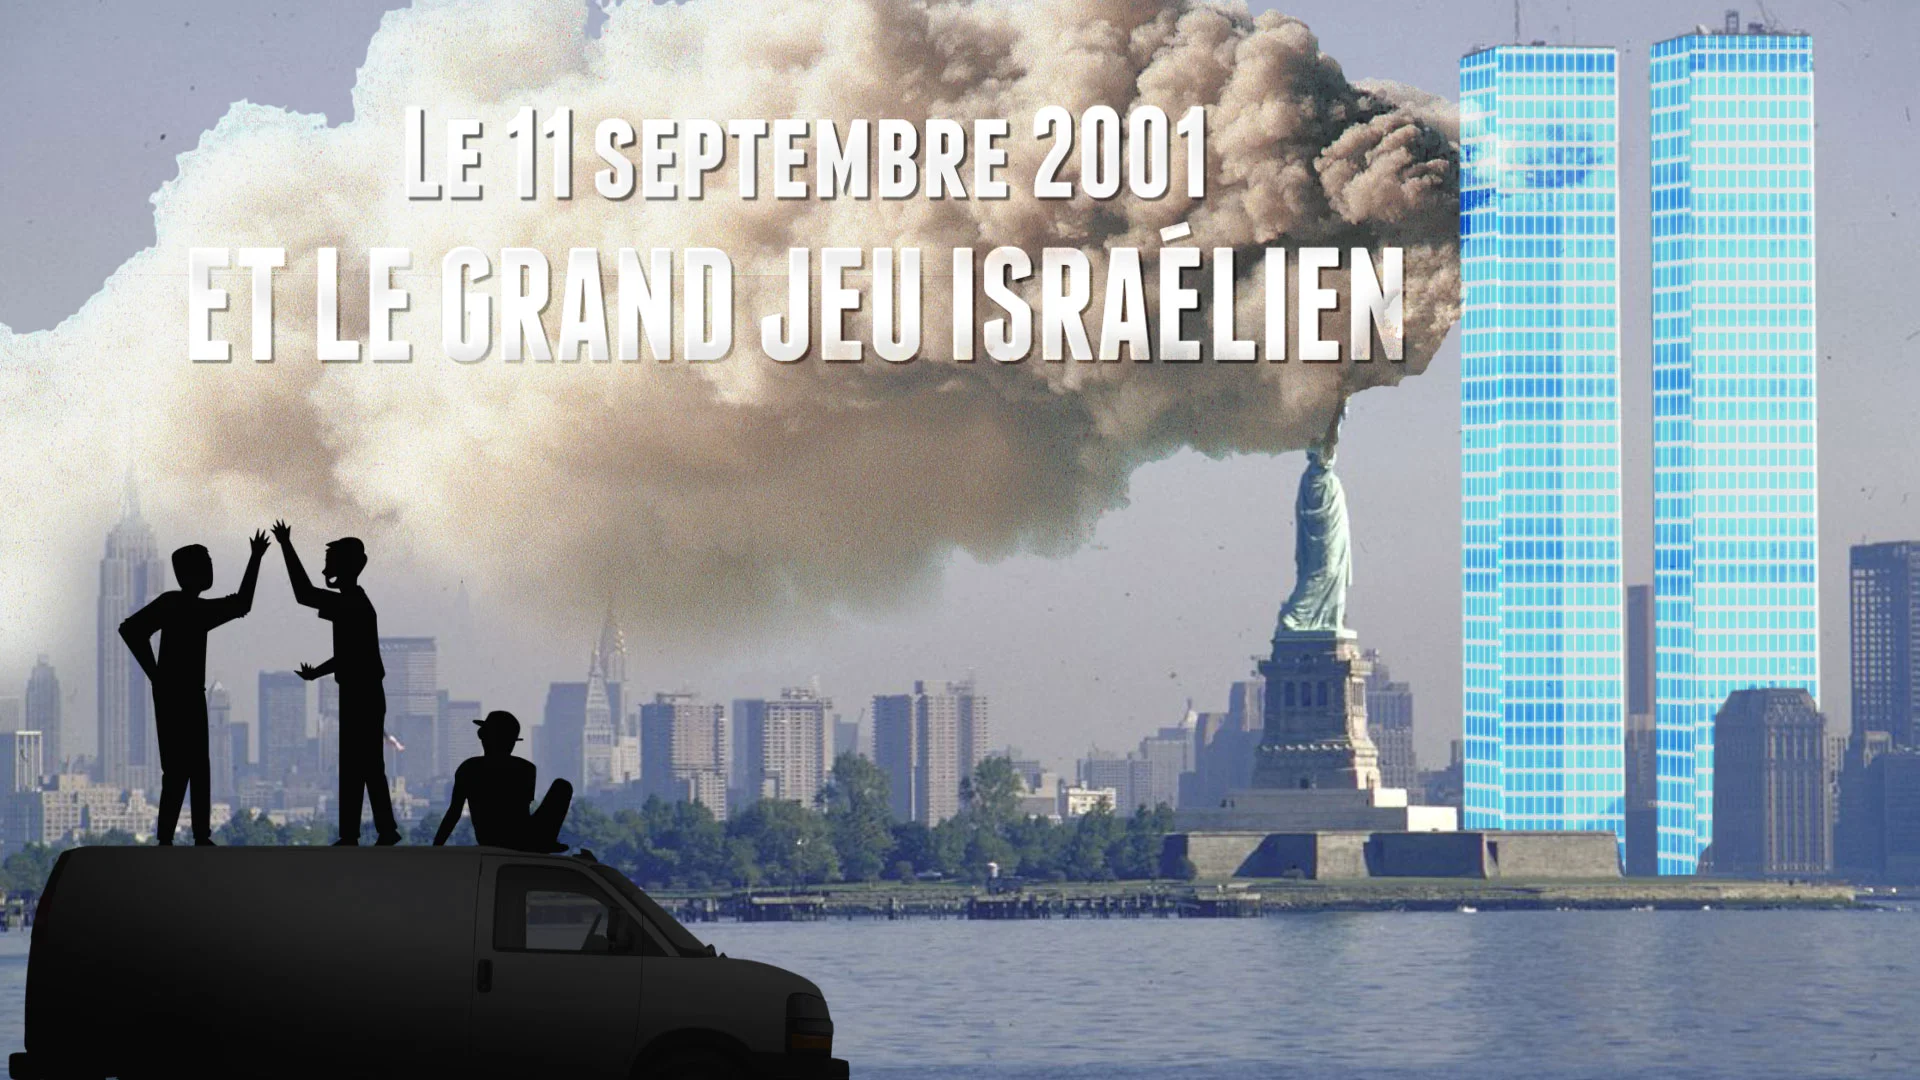 Le 11 septembre et le grand jeu israélien (extrait)